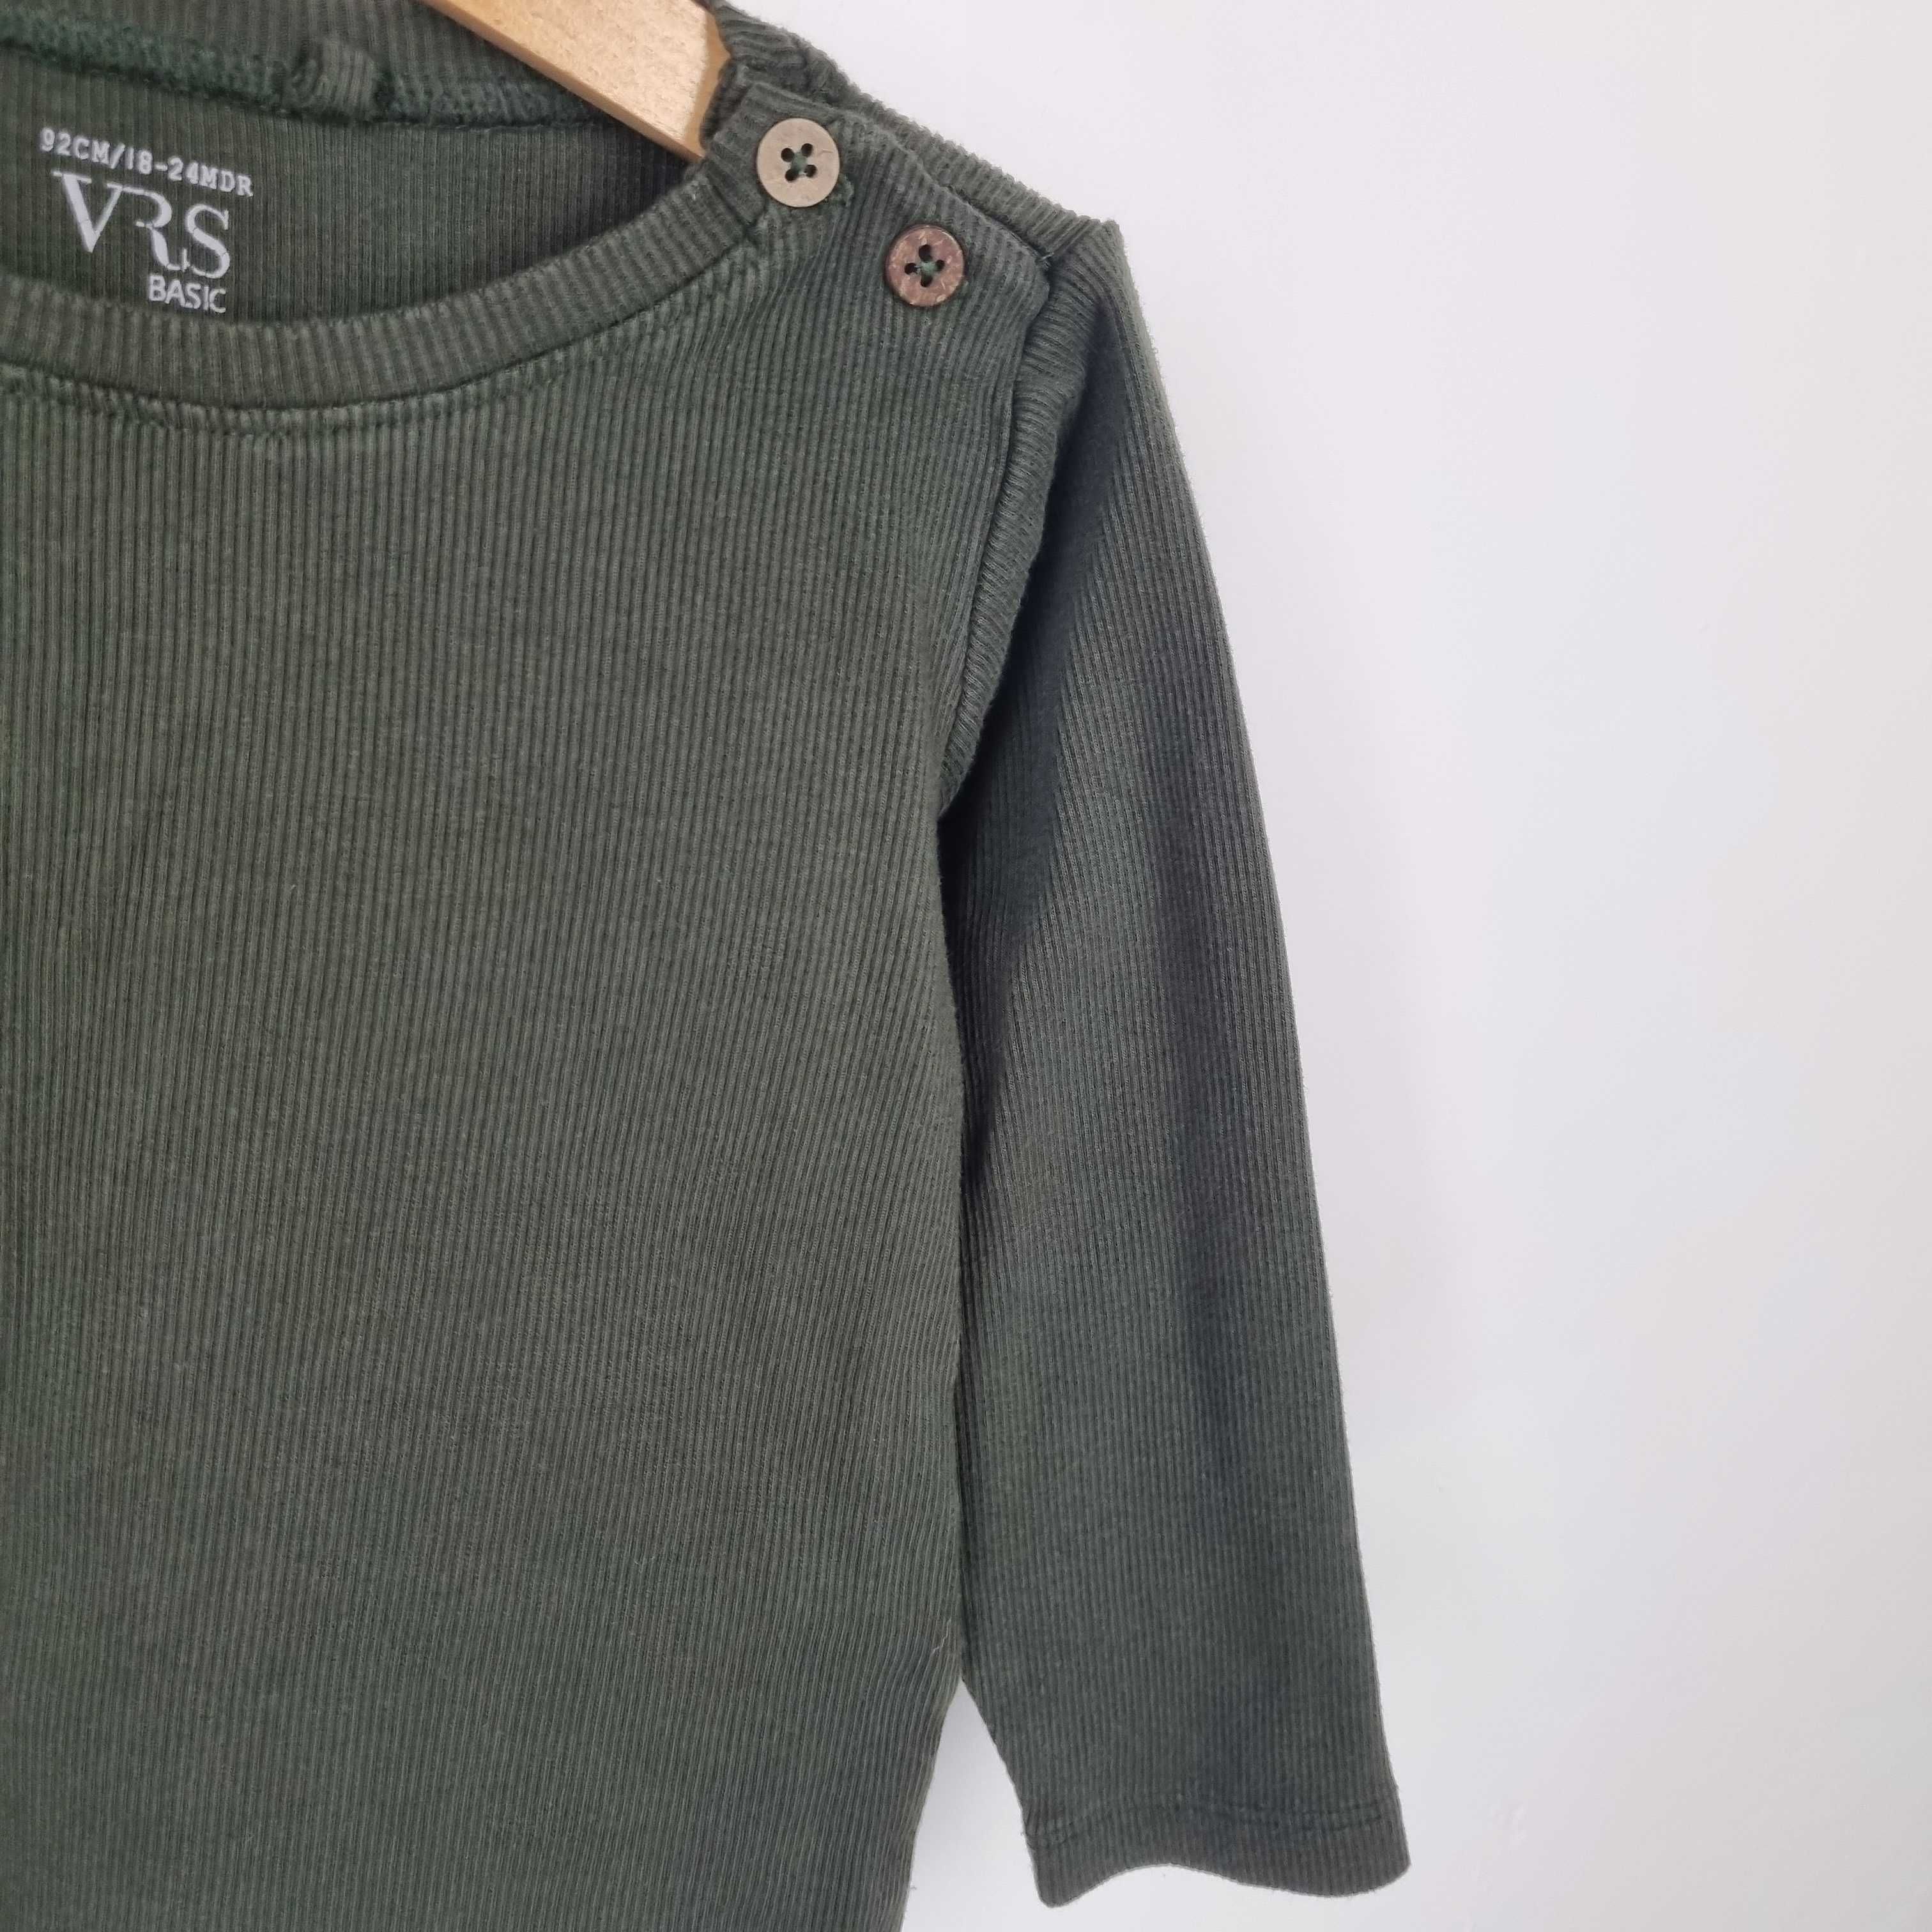 Zielona bluza, prążkowana, VRS, rozmiar 92, stan bdb